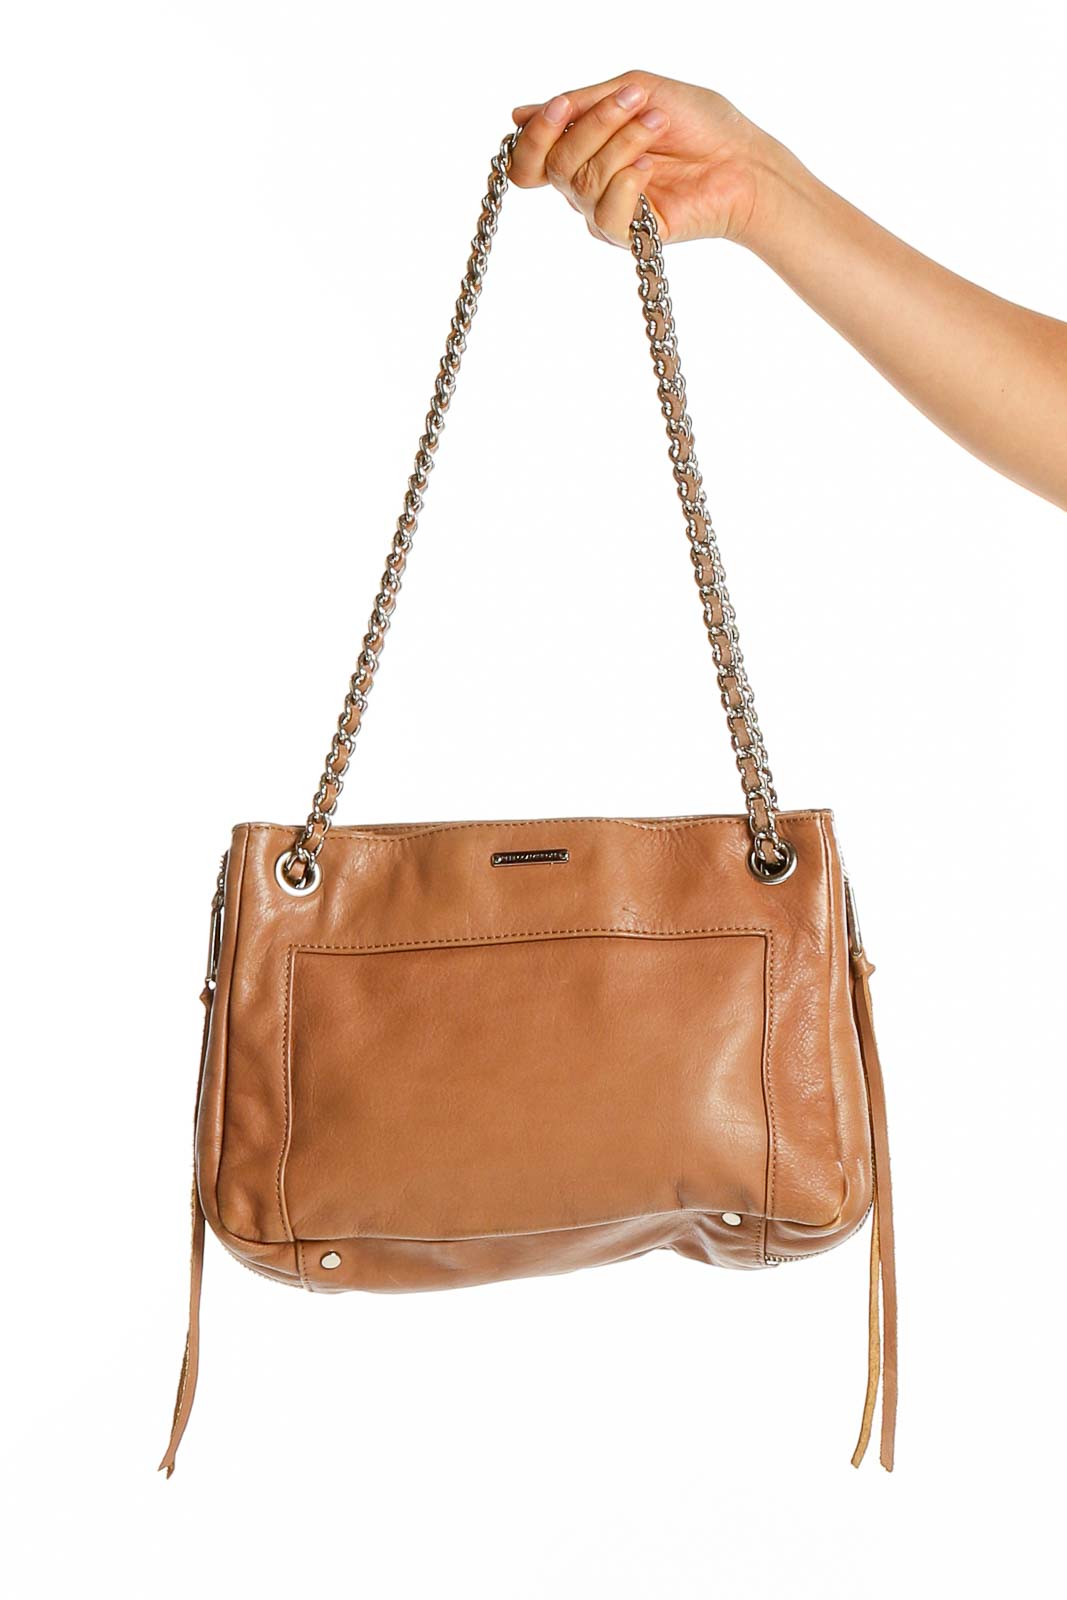 Brown Chain Strap Shoulder Bag Front